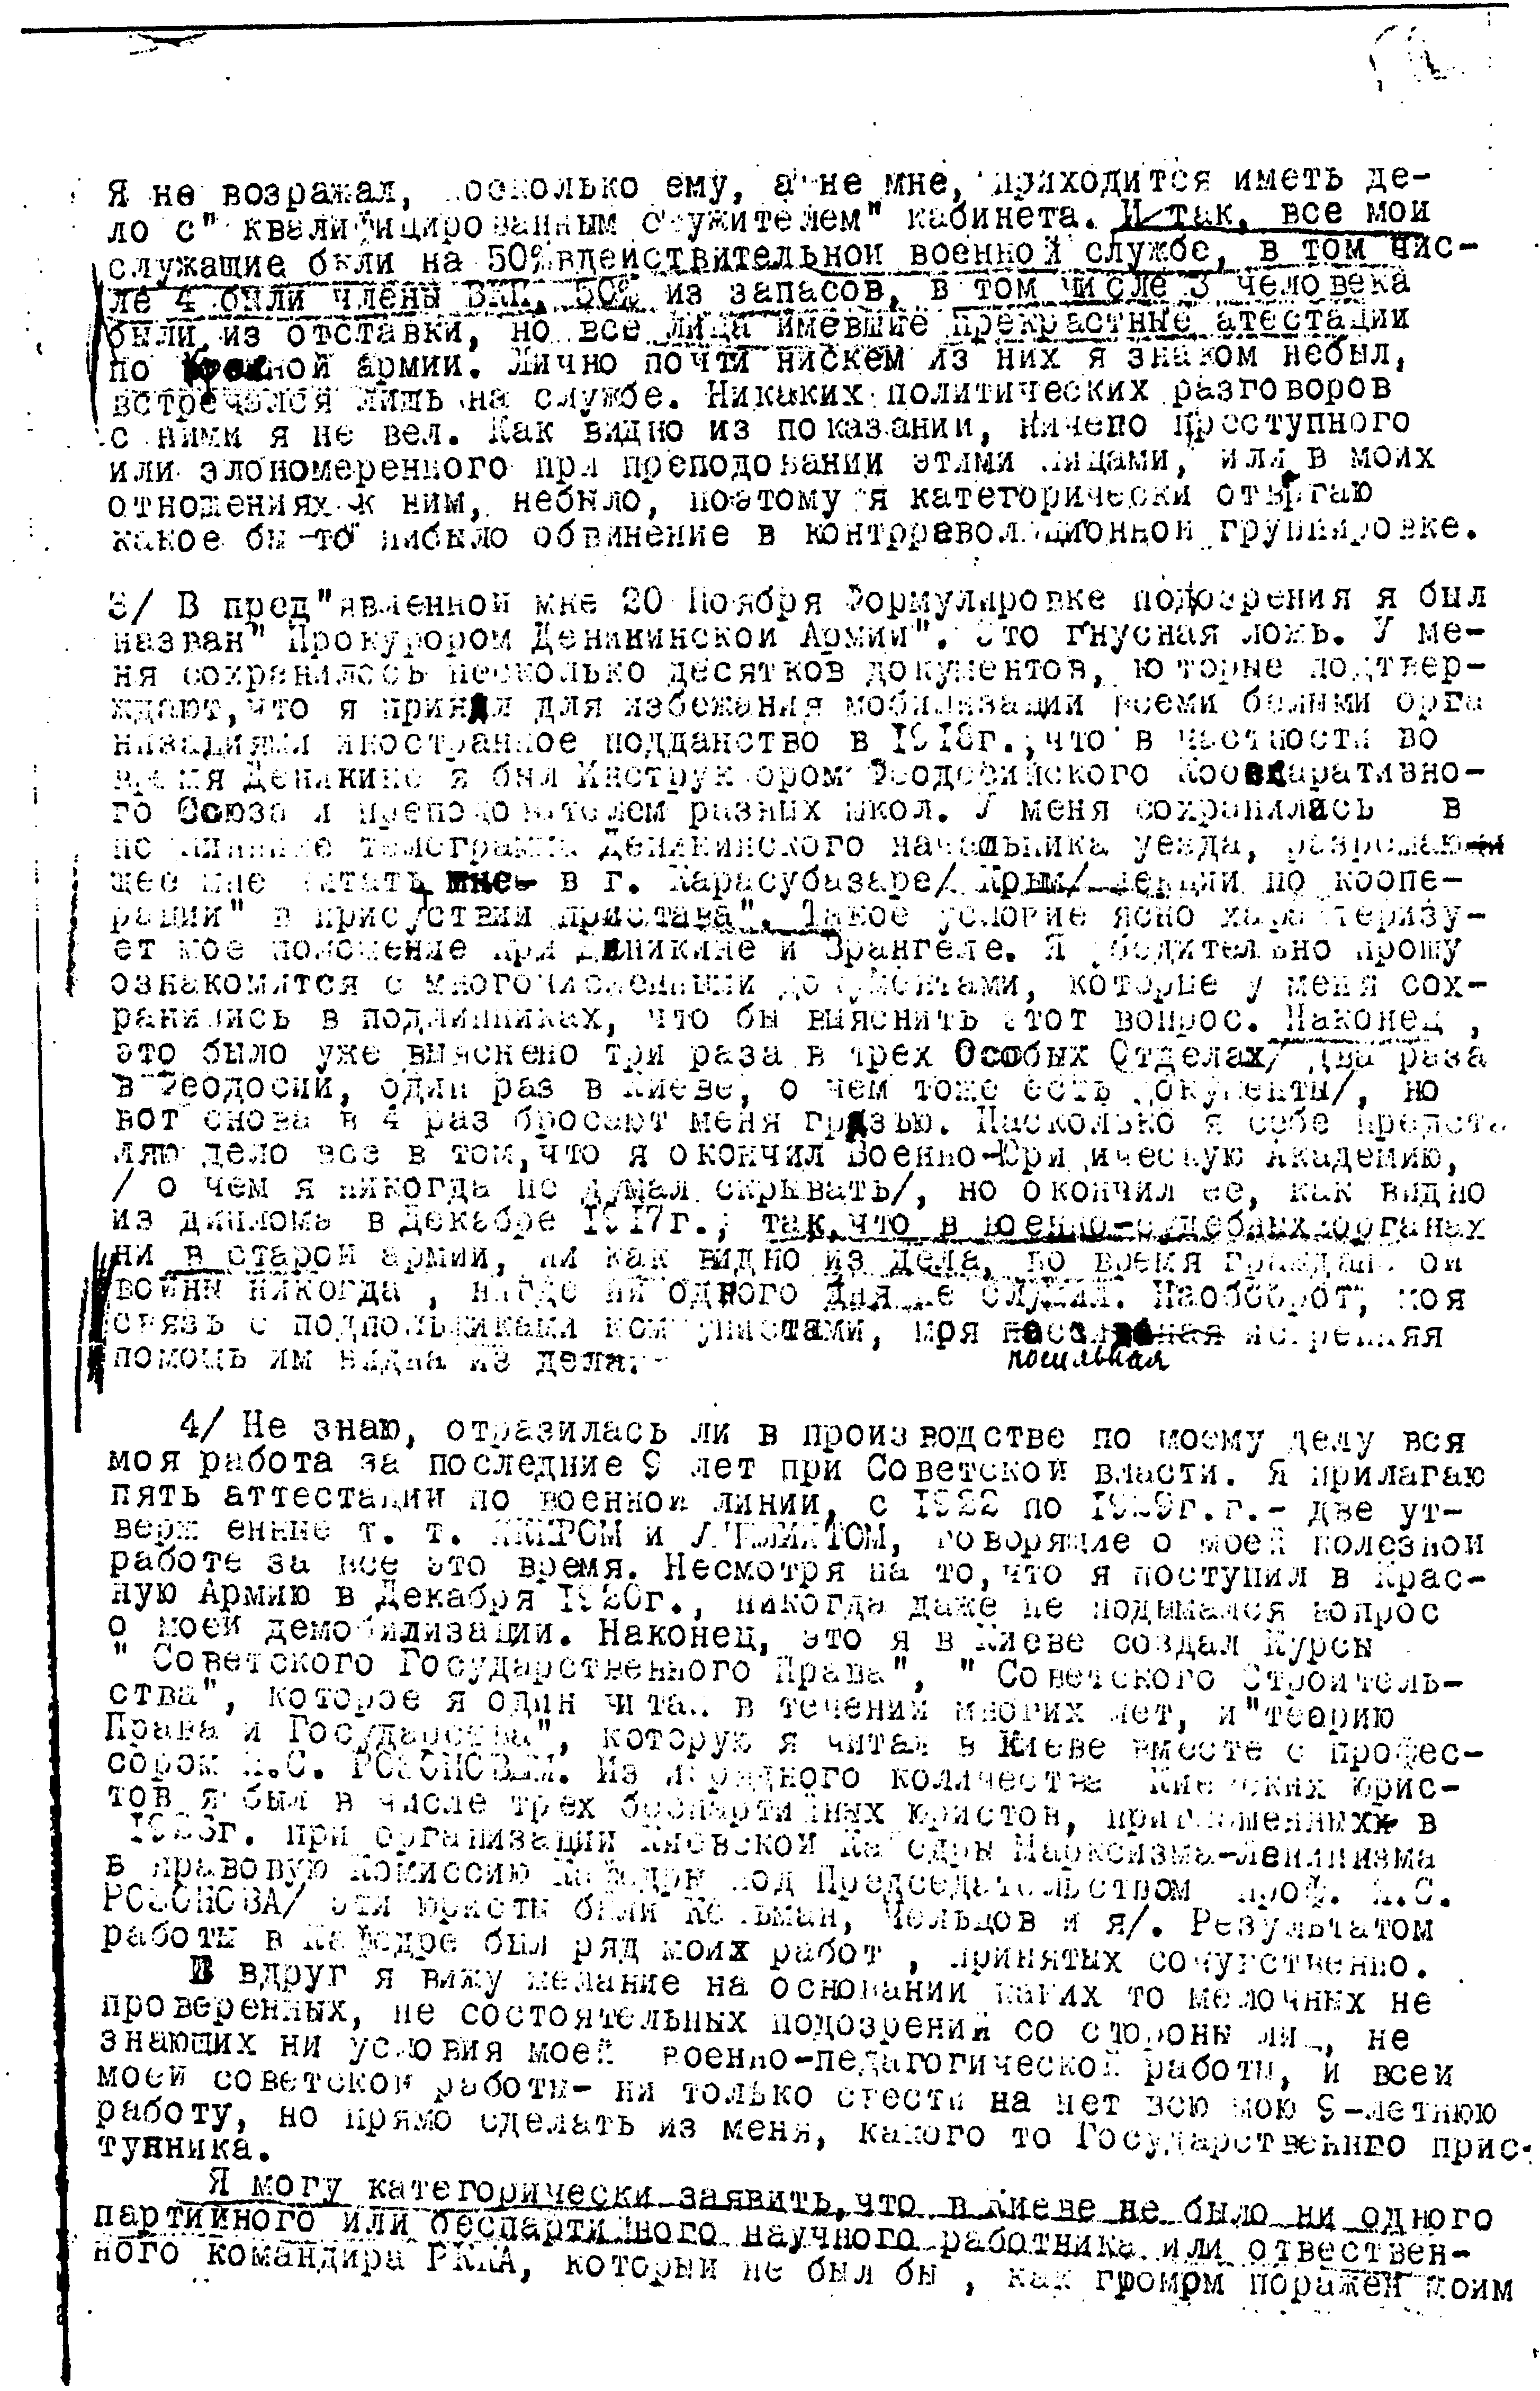 Документы к биографии Л.С. Карума. Заявление из личного дела 1930 года